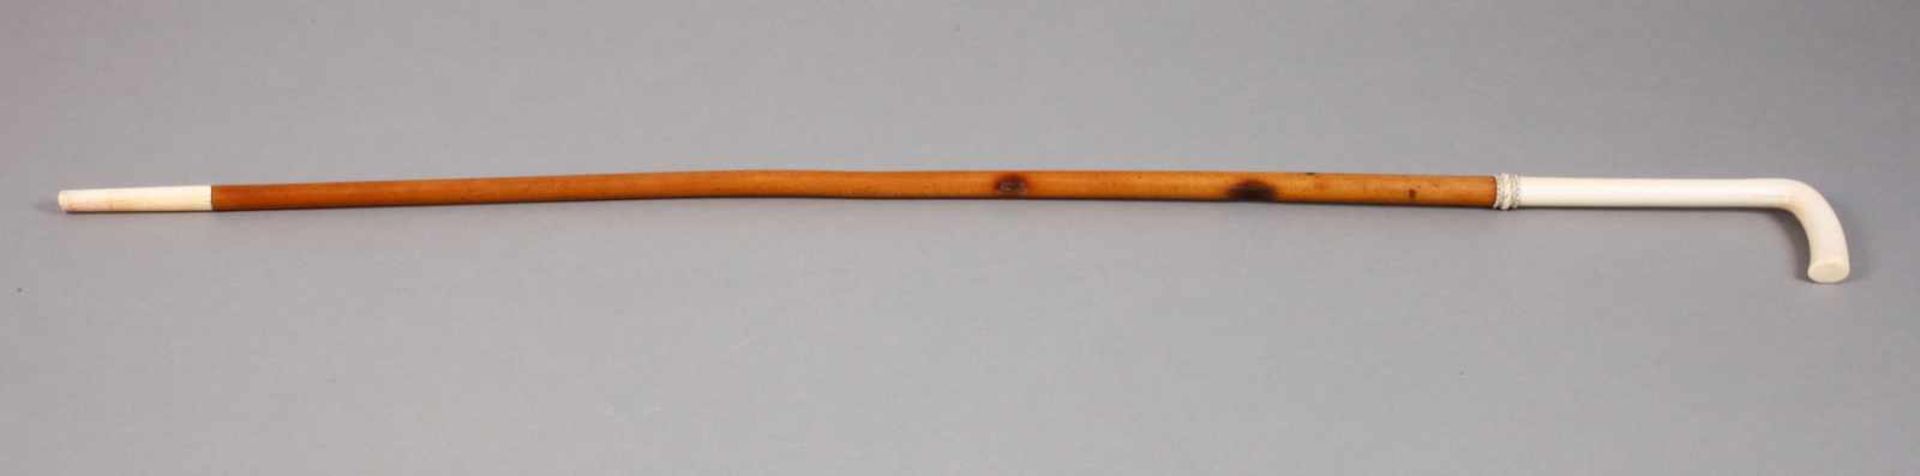 Flanierstock Elfenbein Mitte 19. Jh., elongiertes, schlankes Griffstück aus Elfenbein mit - Bild 3 aus 3